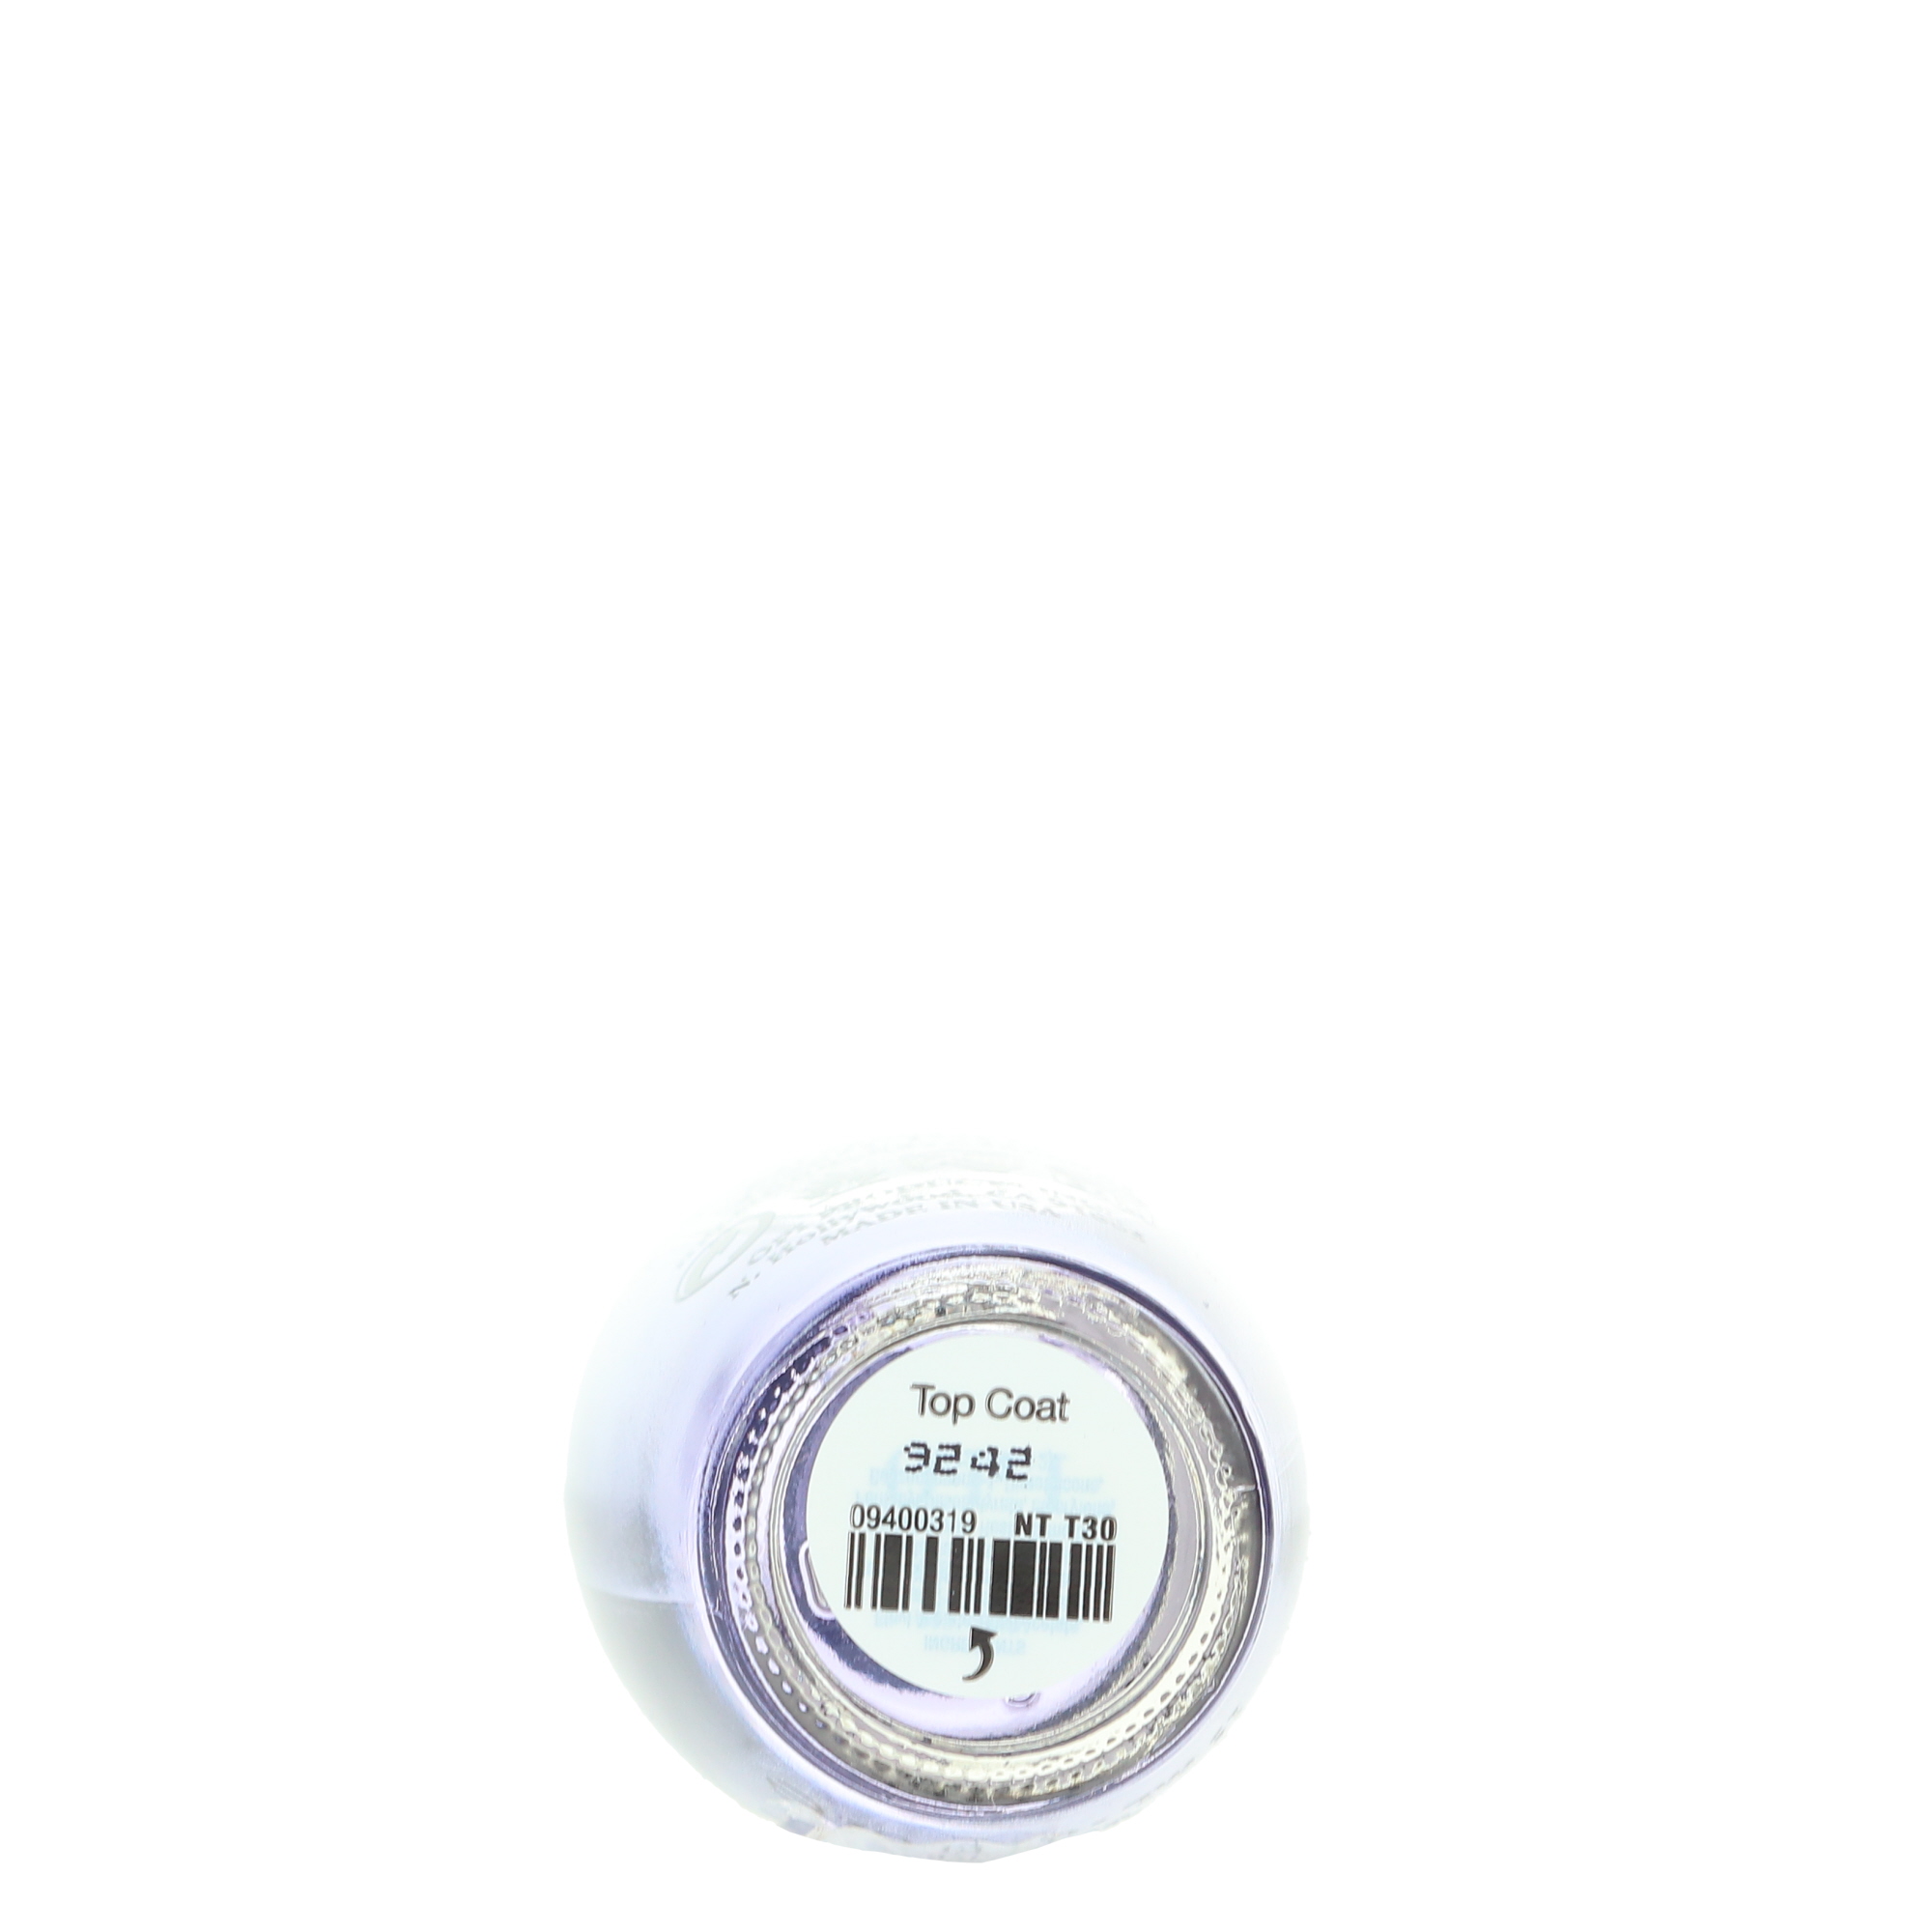 OPI Nail Lacquer, Top Coat, Clear Nail Polish, 0.5 fl oz - image 4 of 7